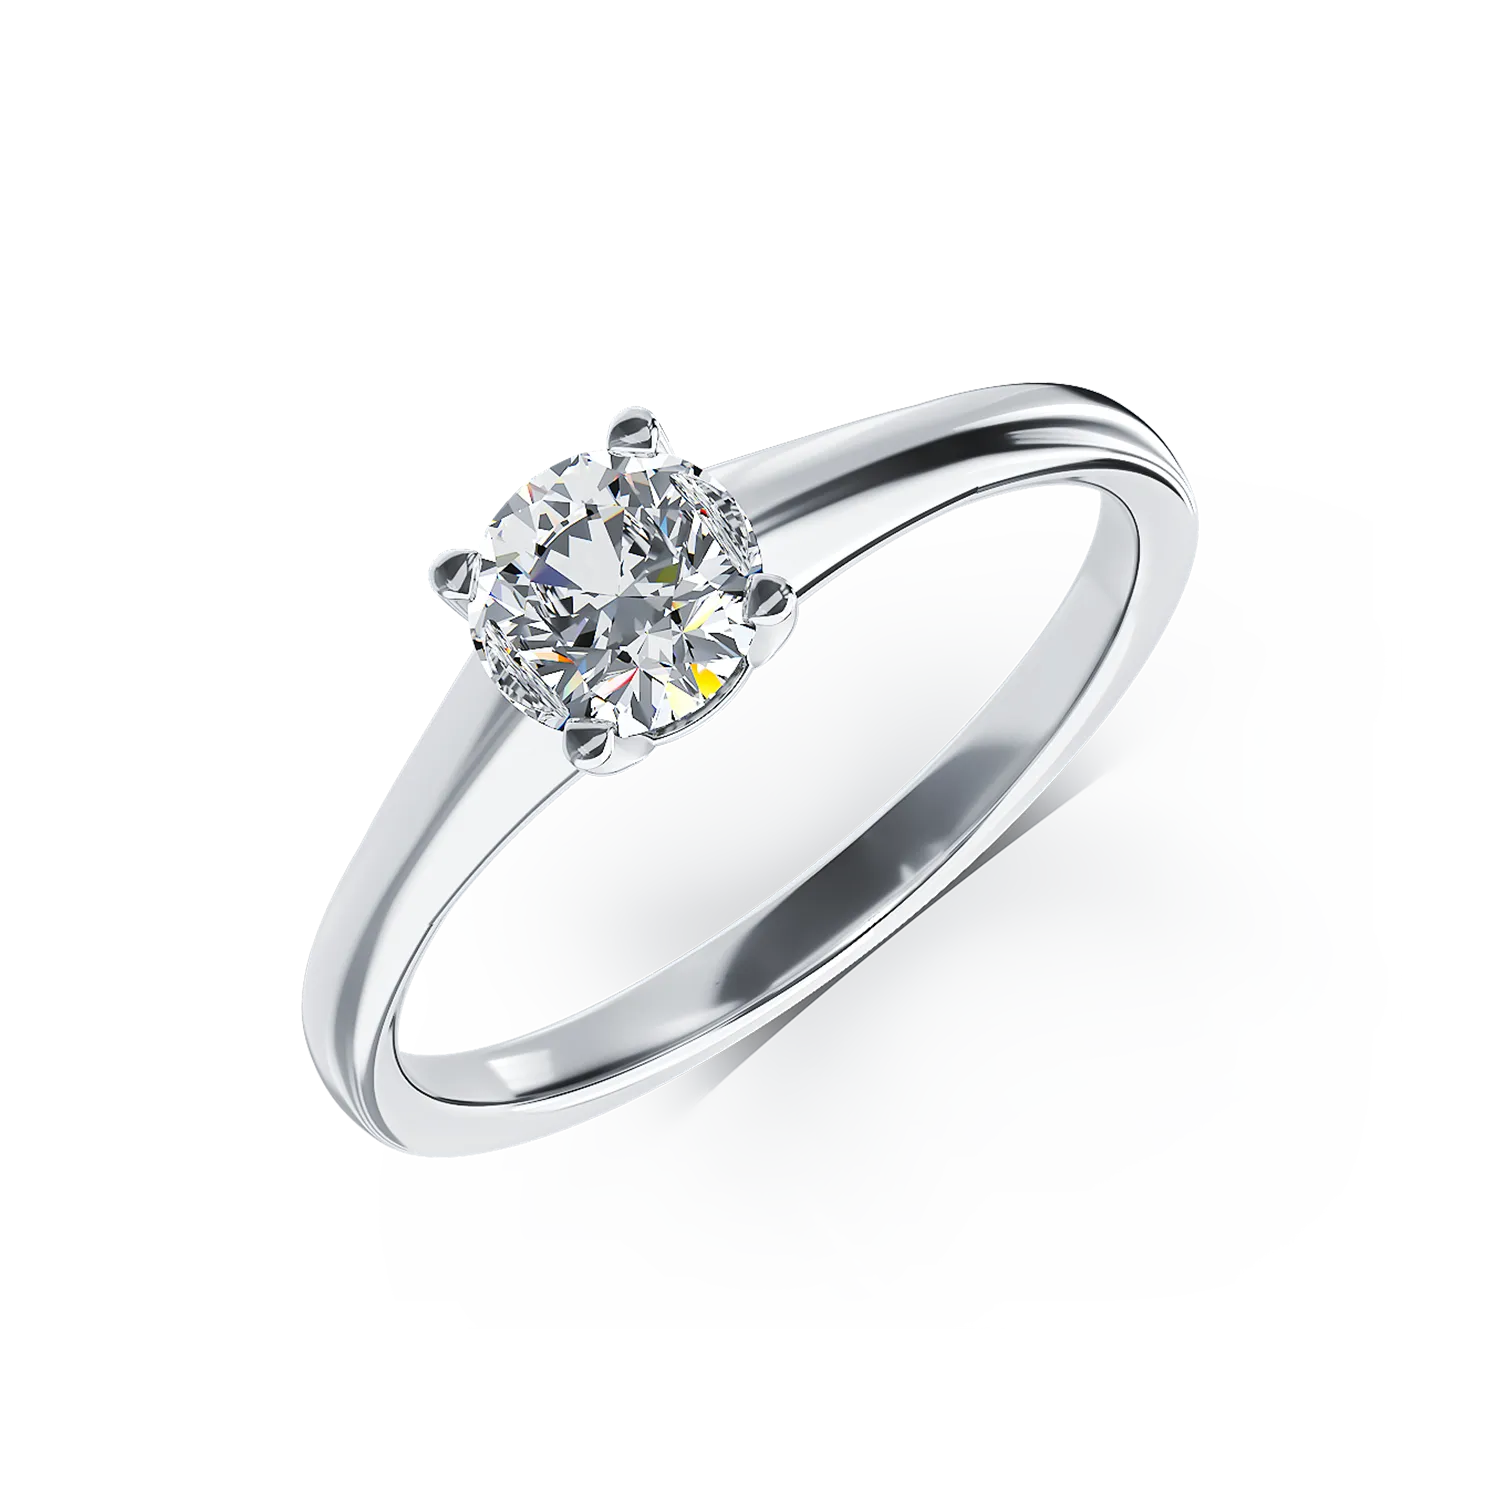 Eljegyzési gyűrű 18K-os fehér aranyból 0,5ct gyémánttal. Gramm: 3,28